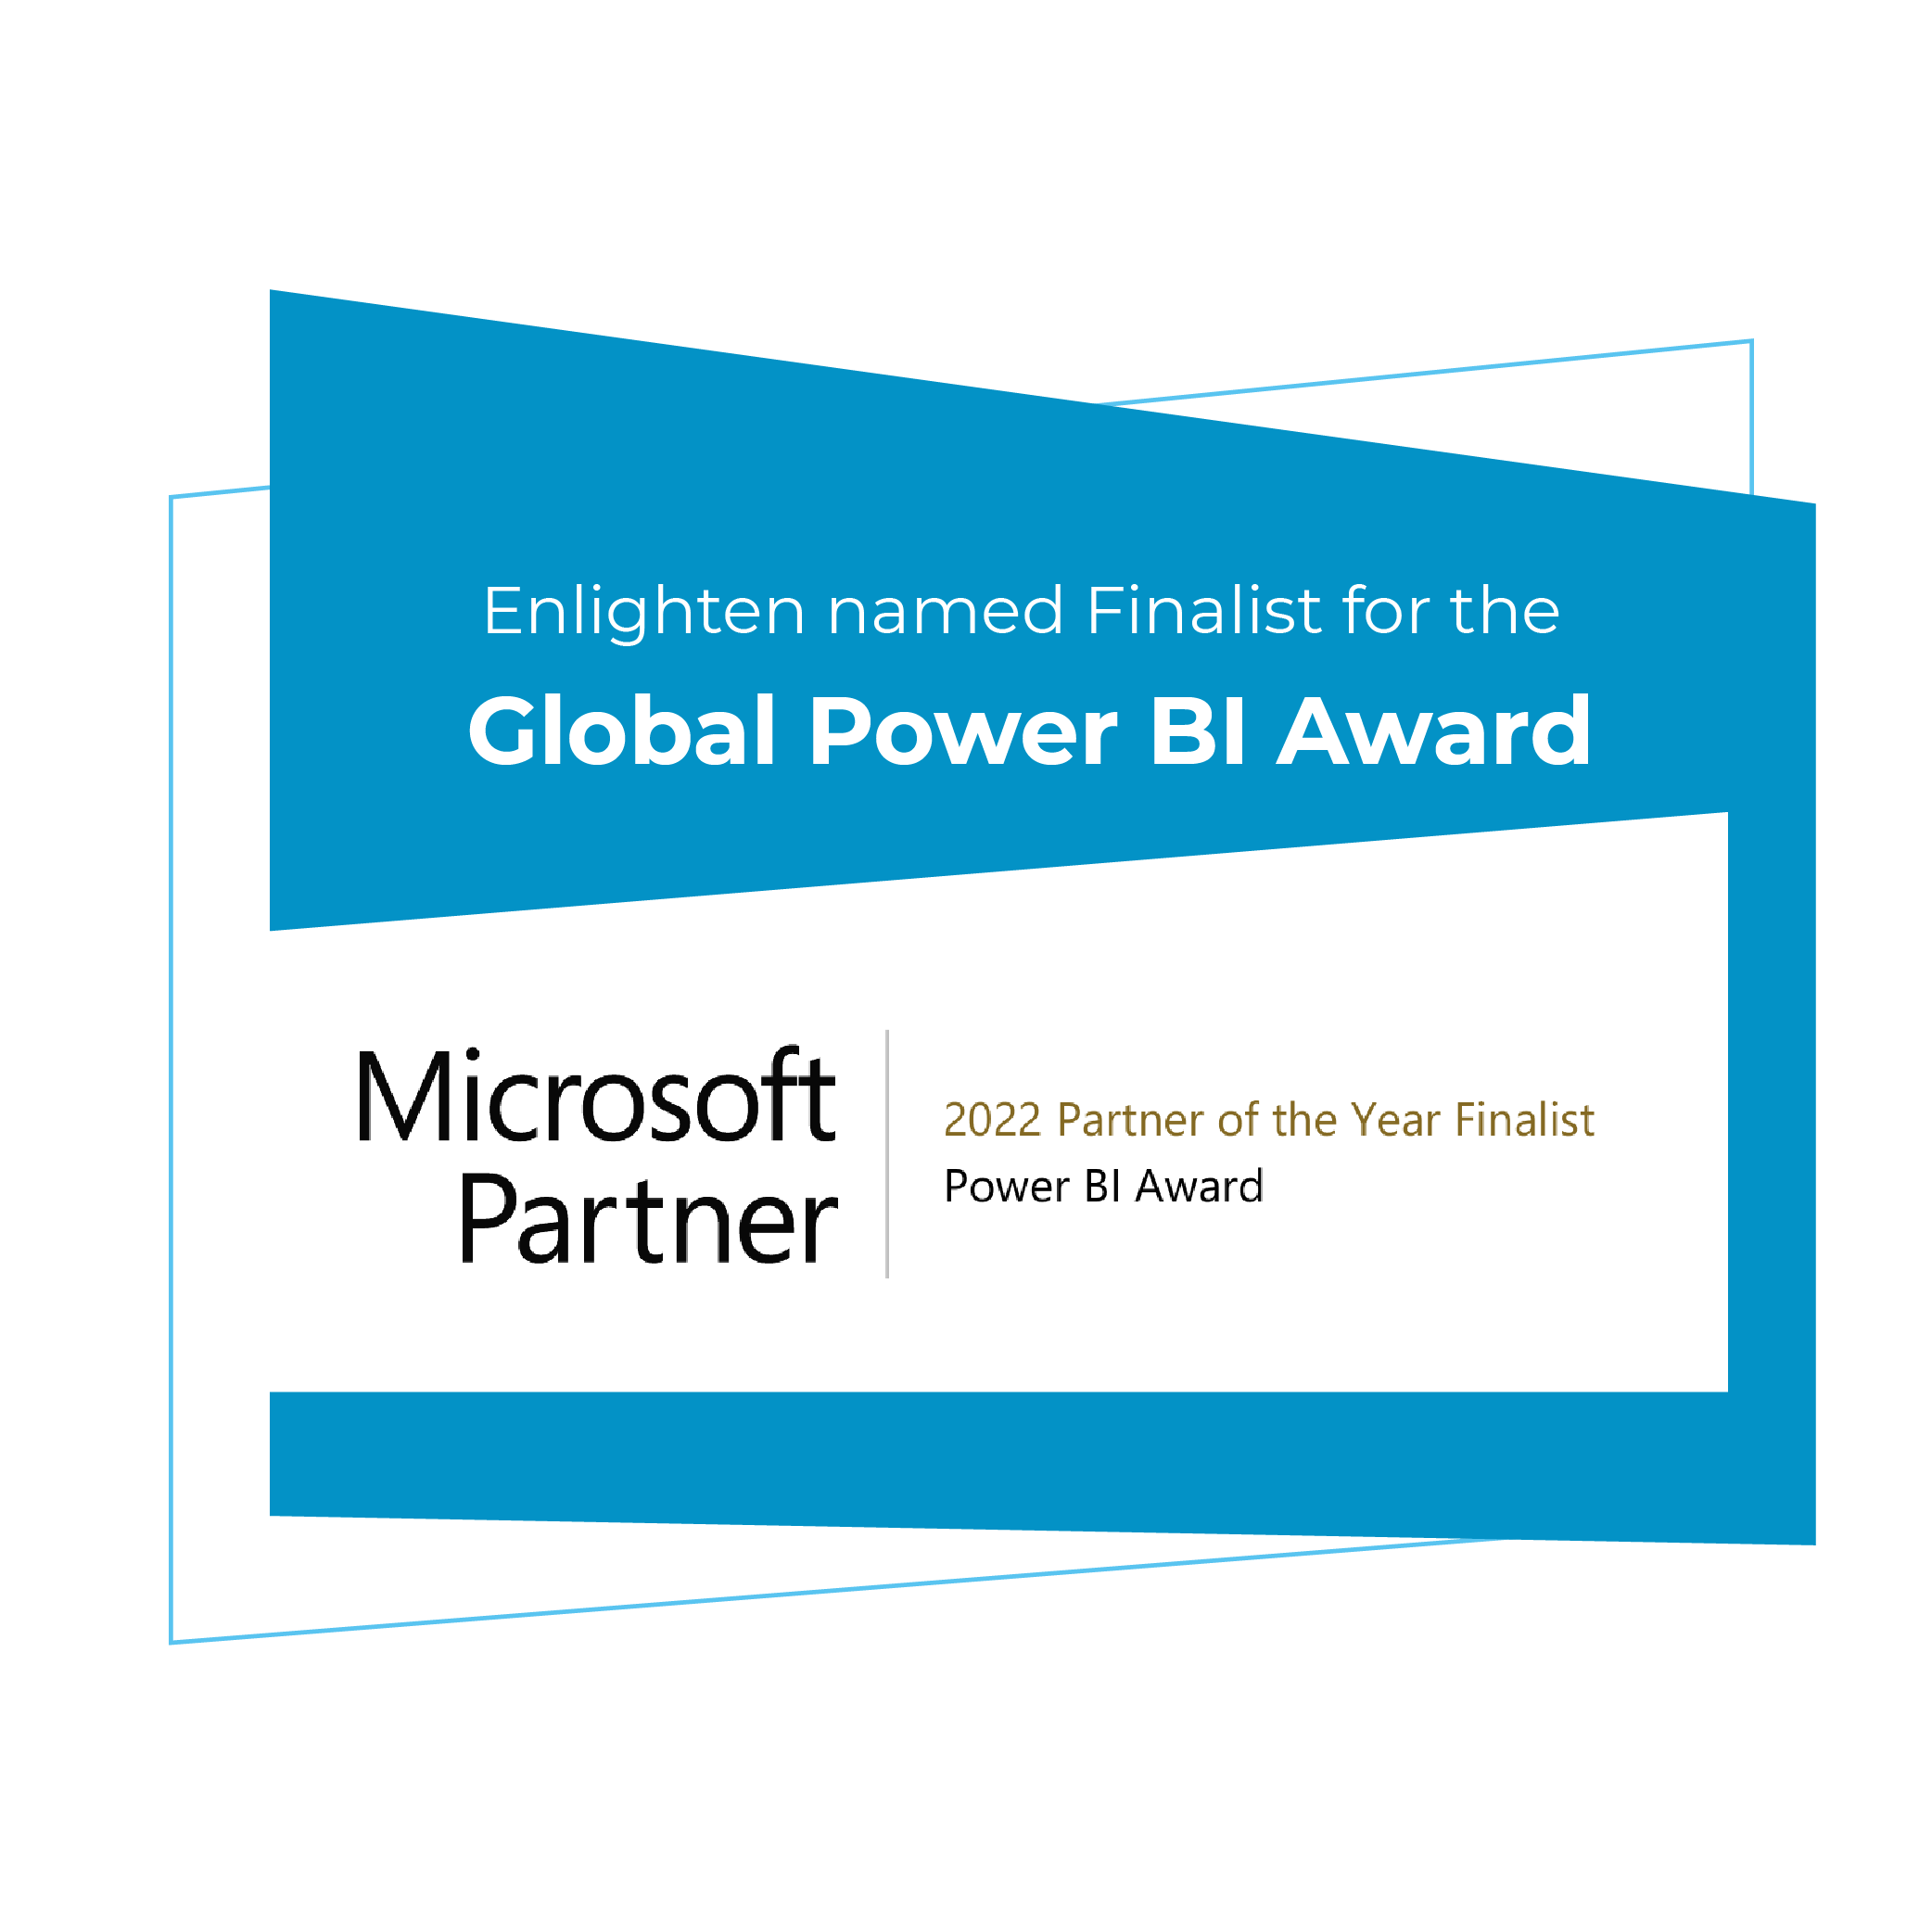 Enlighten named finalist for the 2022 Microsoft Power BI Partner of the Year Award.